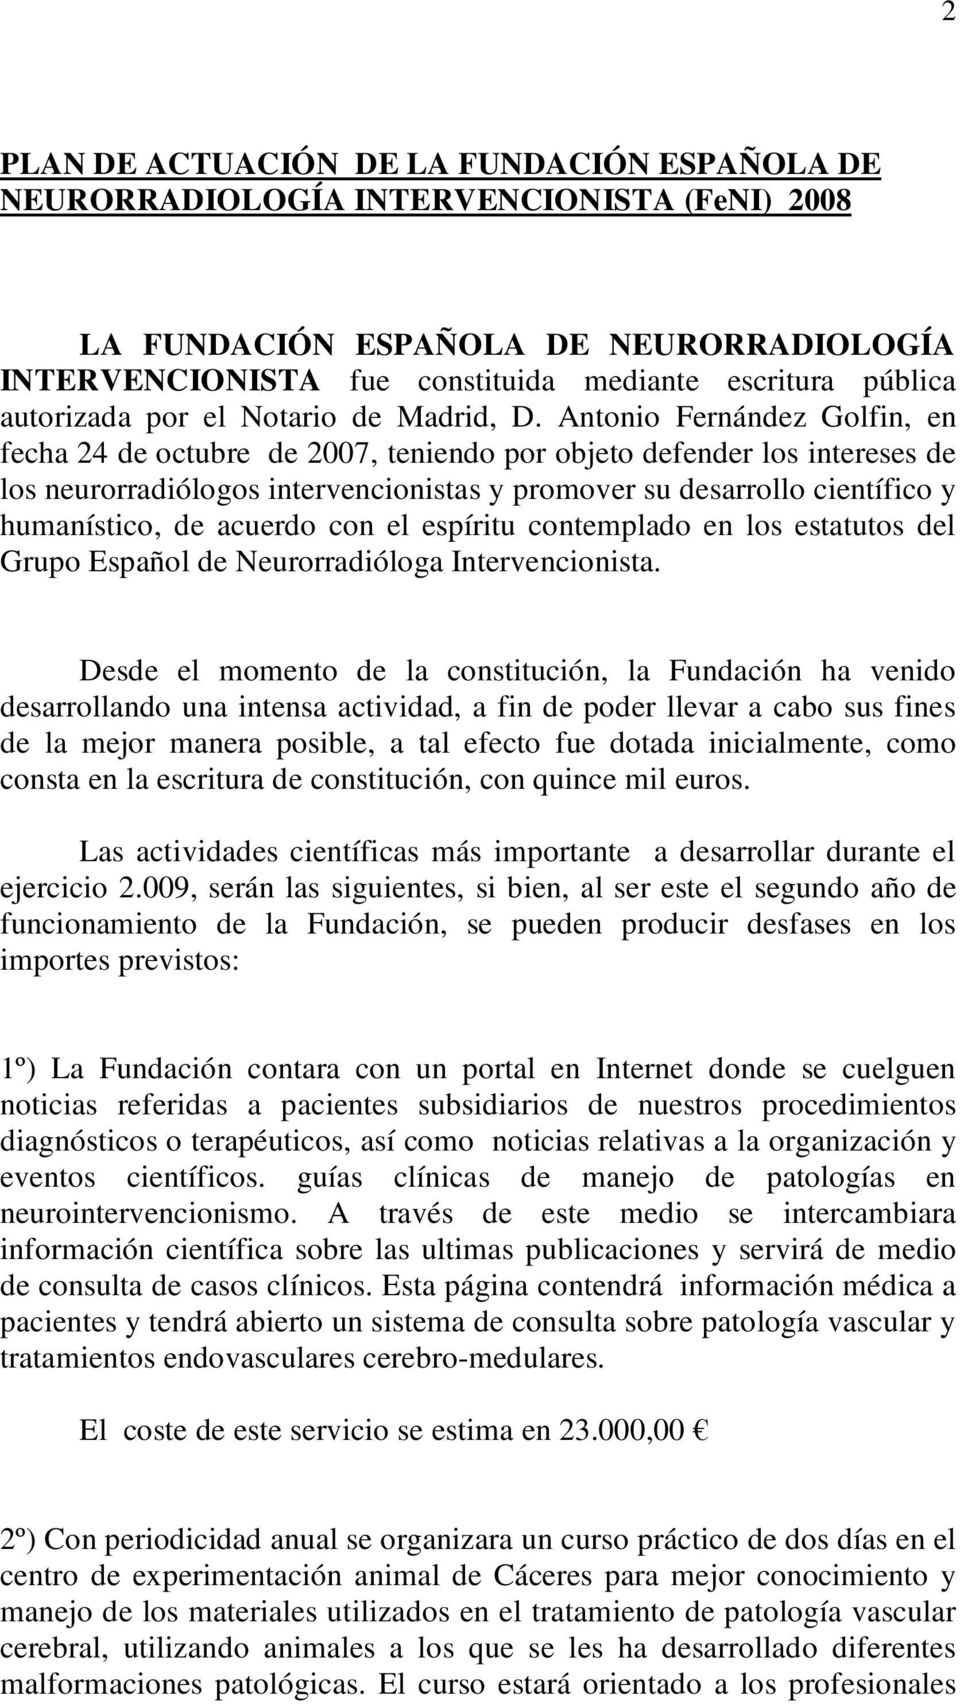 Antonio Fernández Golfin, en fecha 24 de octubre de 2007, teniendo por objeto defender los intereses de los neurorradiólogos intervencionistas y promover su desarrollo científico y humanístico, de